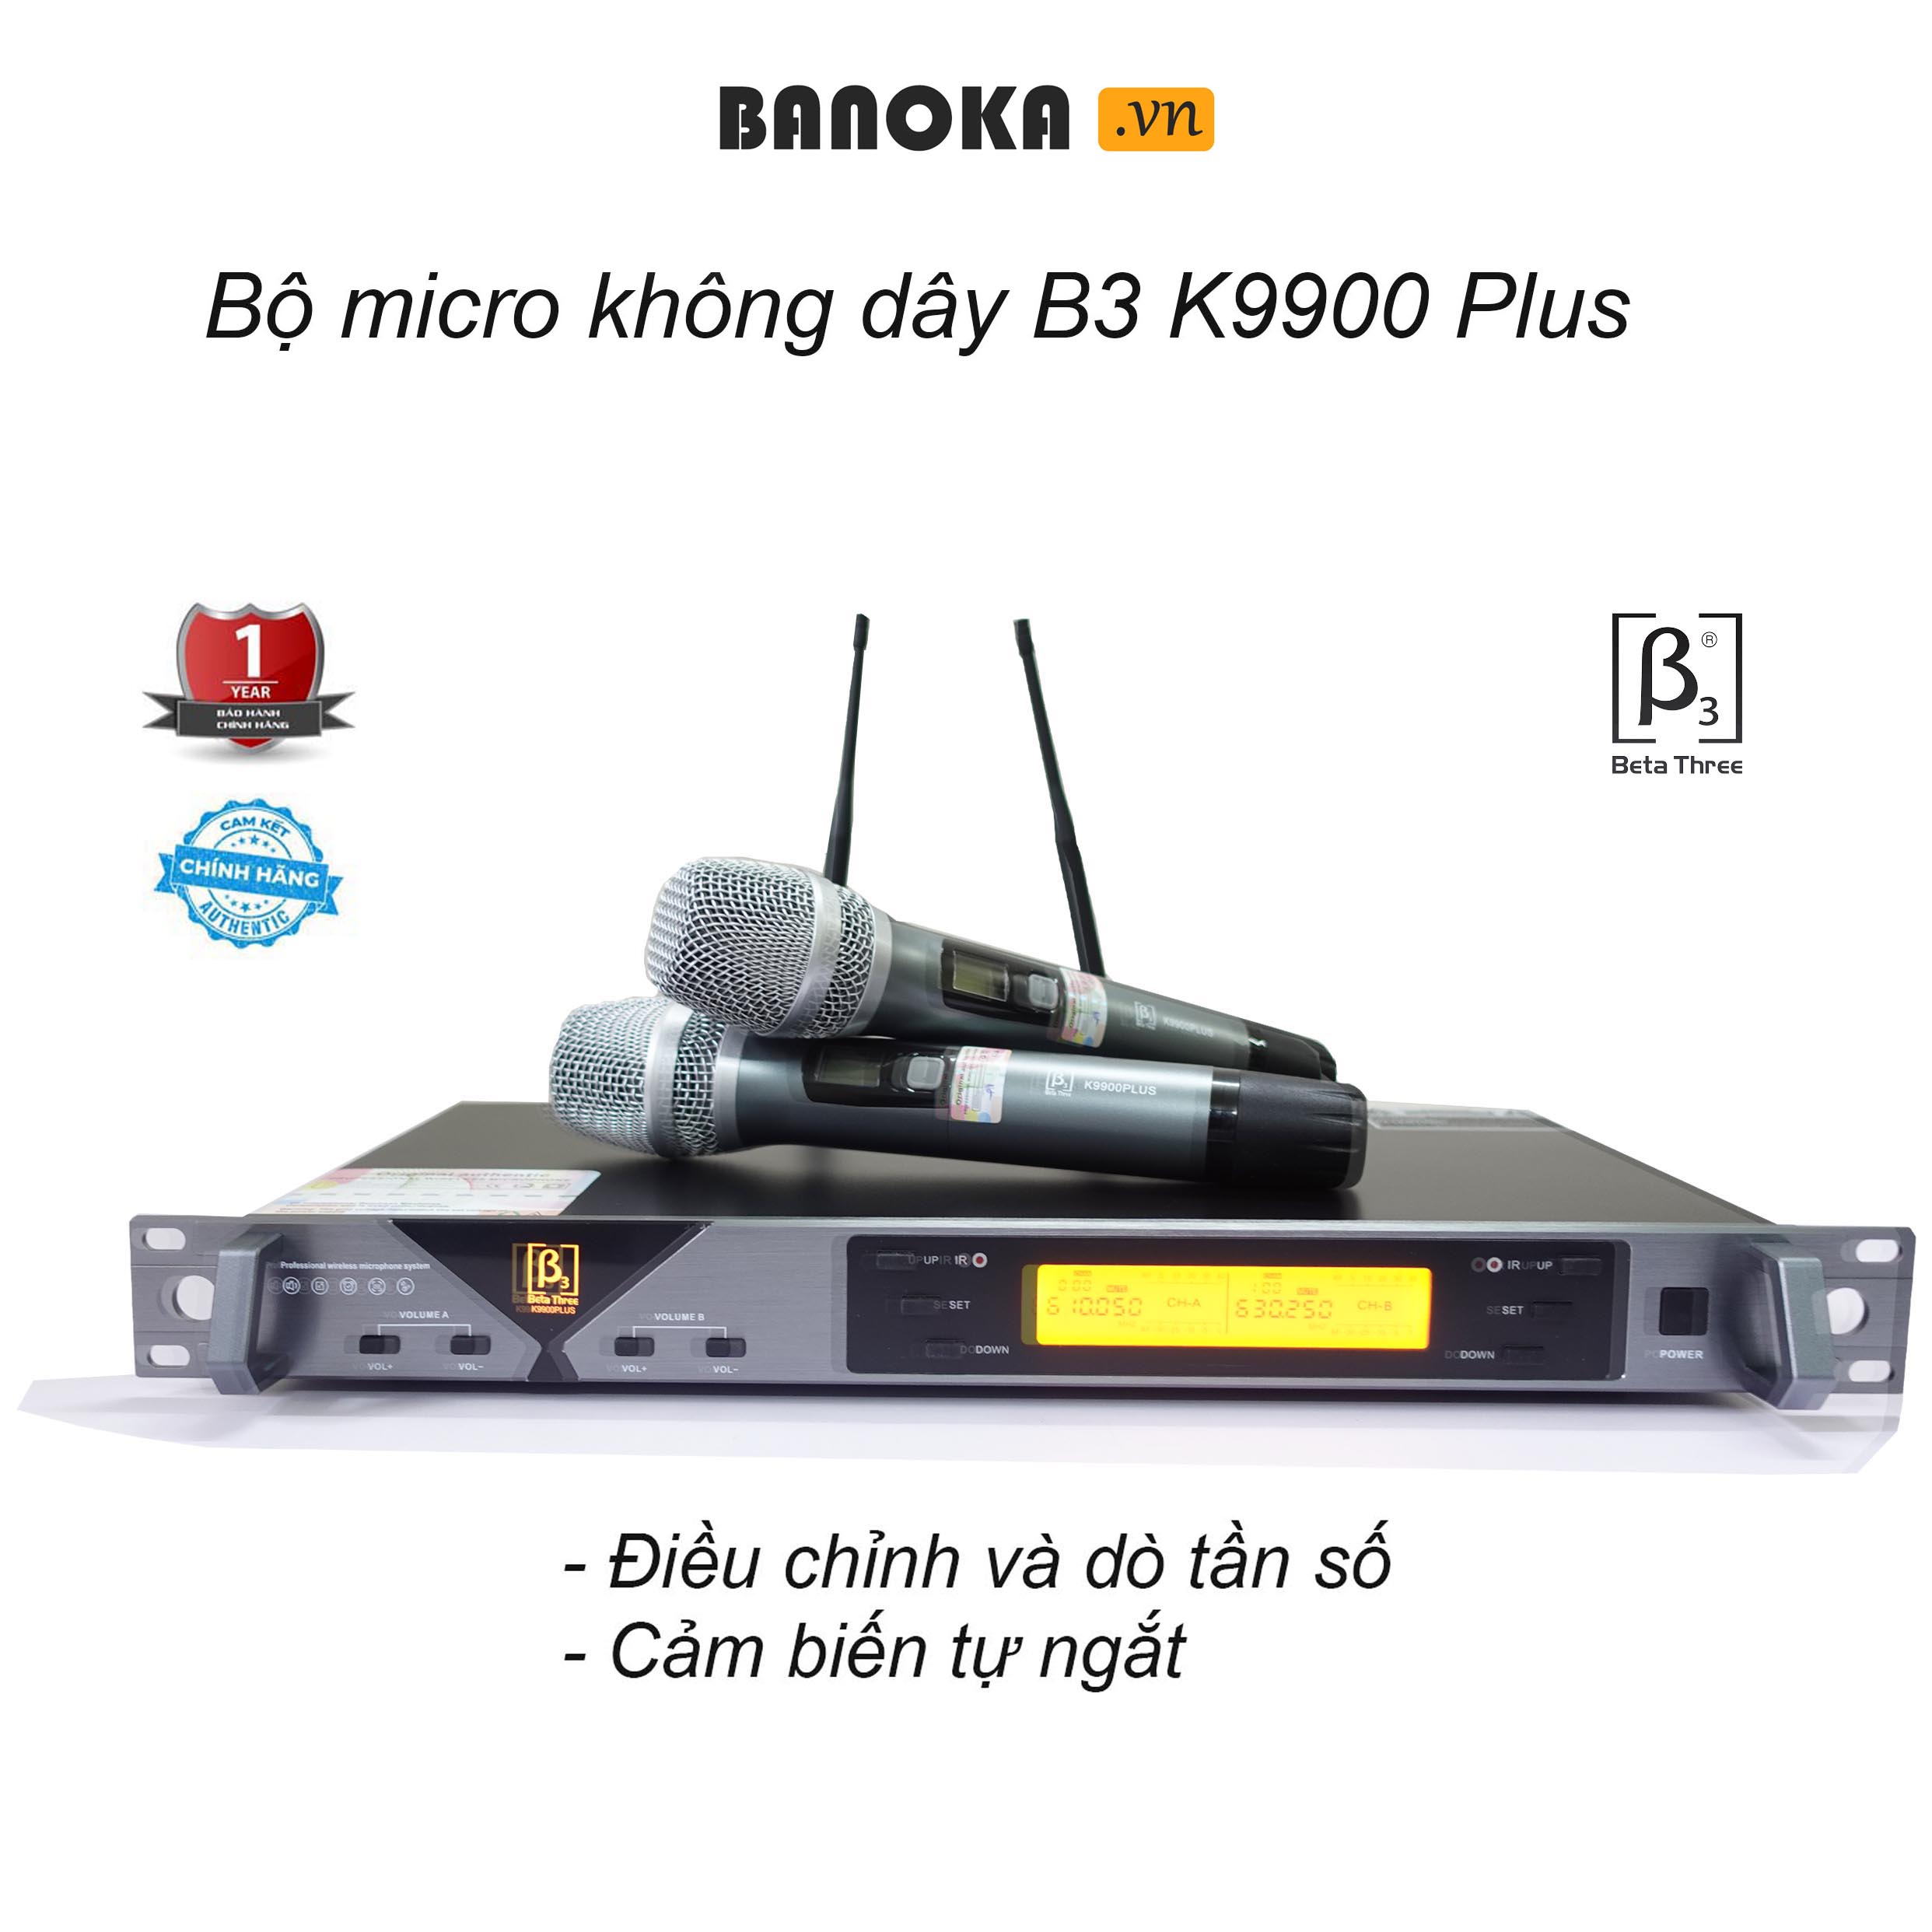 Micro không dây karaoke B3 K9900 Plus chính hãng, dò sóng tự động, cảm biến tự ngắt